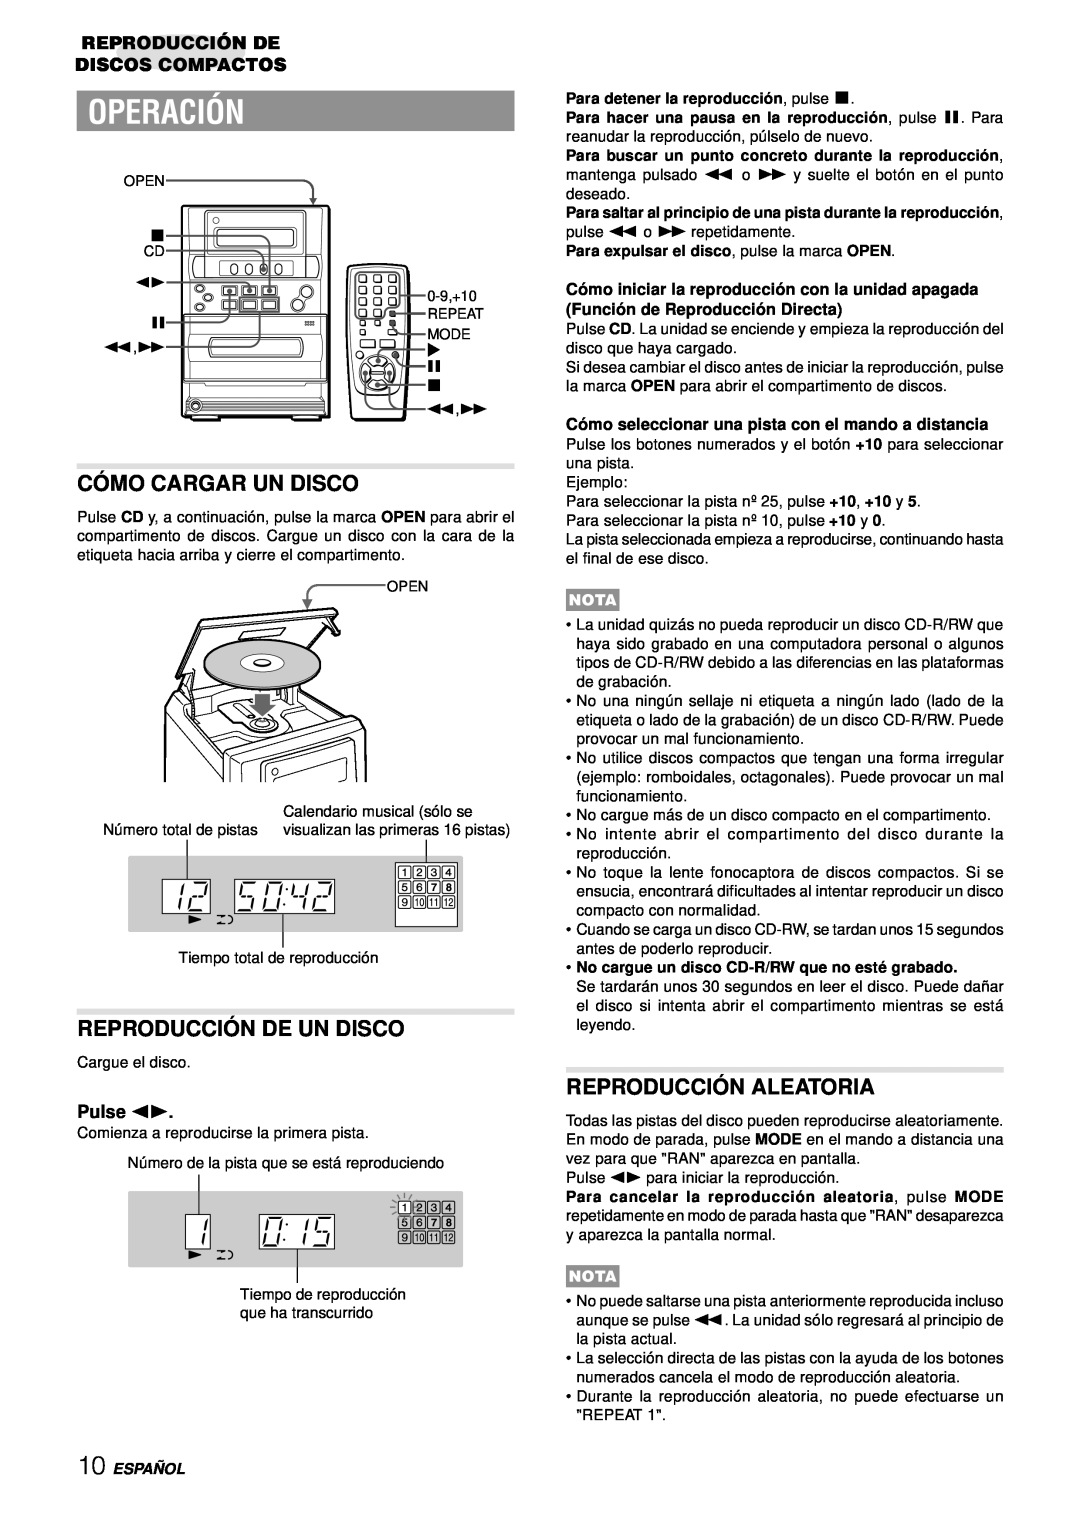 Aiwa LCX-357 manual Operación, Có Mo Cargar Un Disco, Reproducció N De Un Disco, Reproducció N Aleatoria, Pulse d 